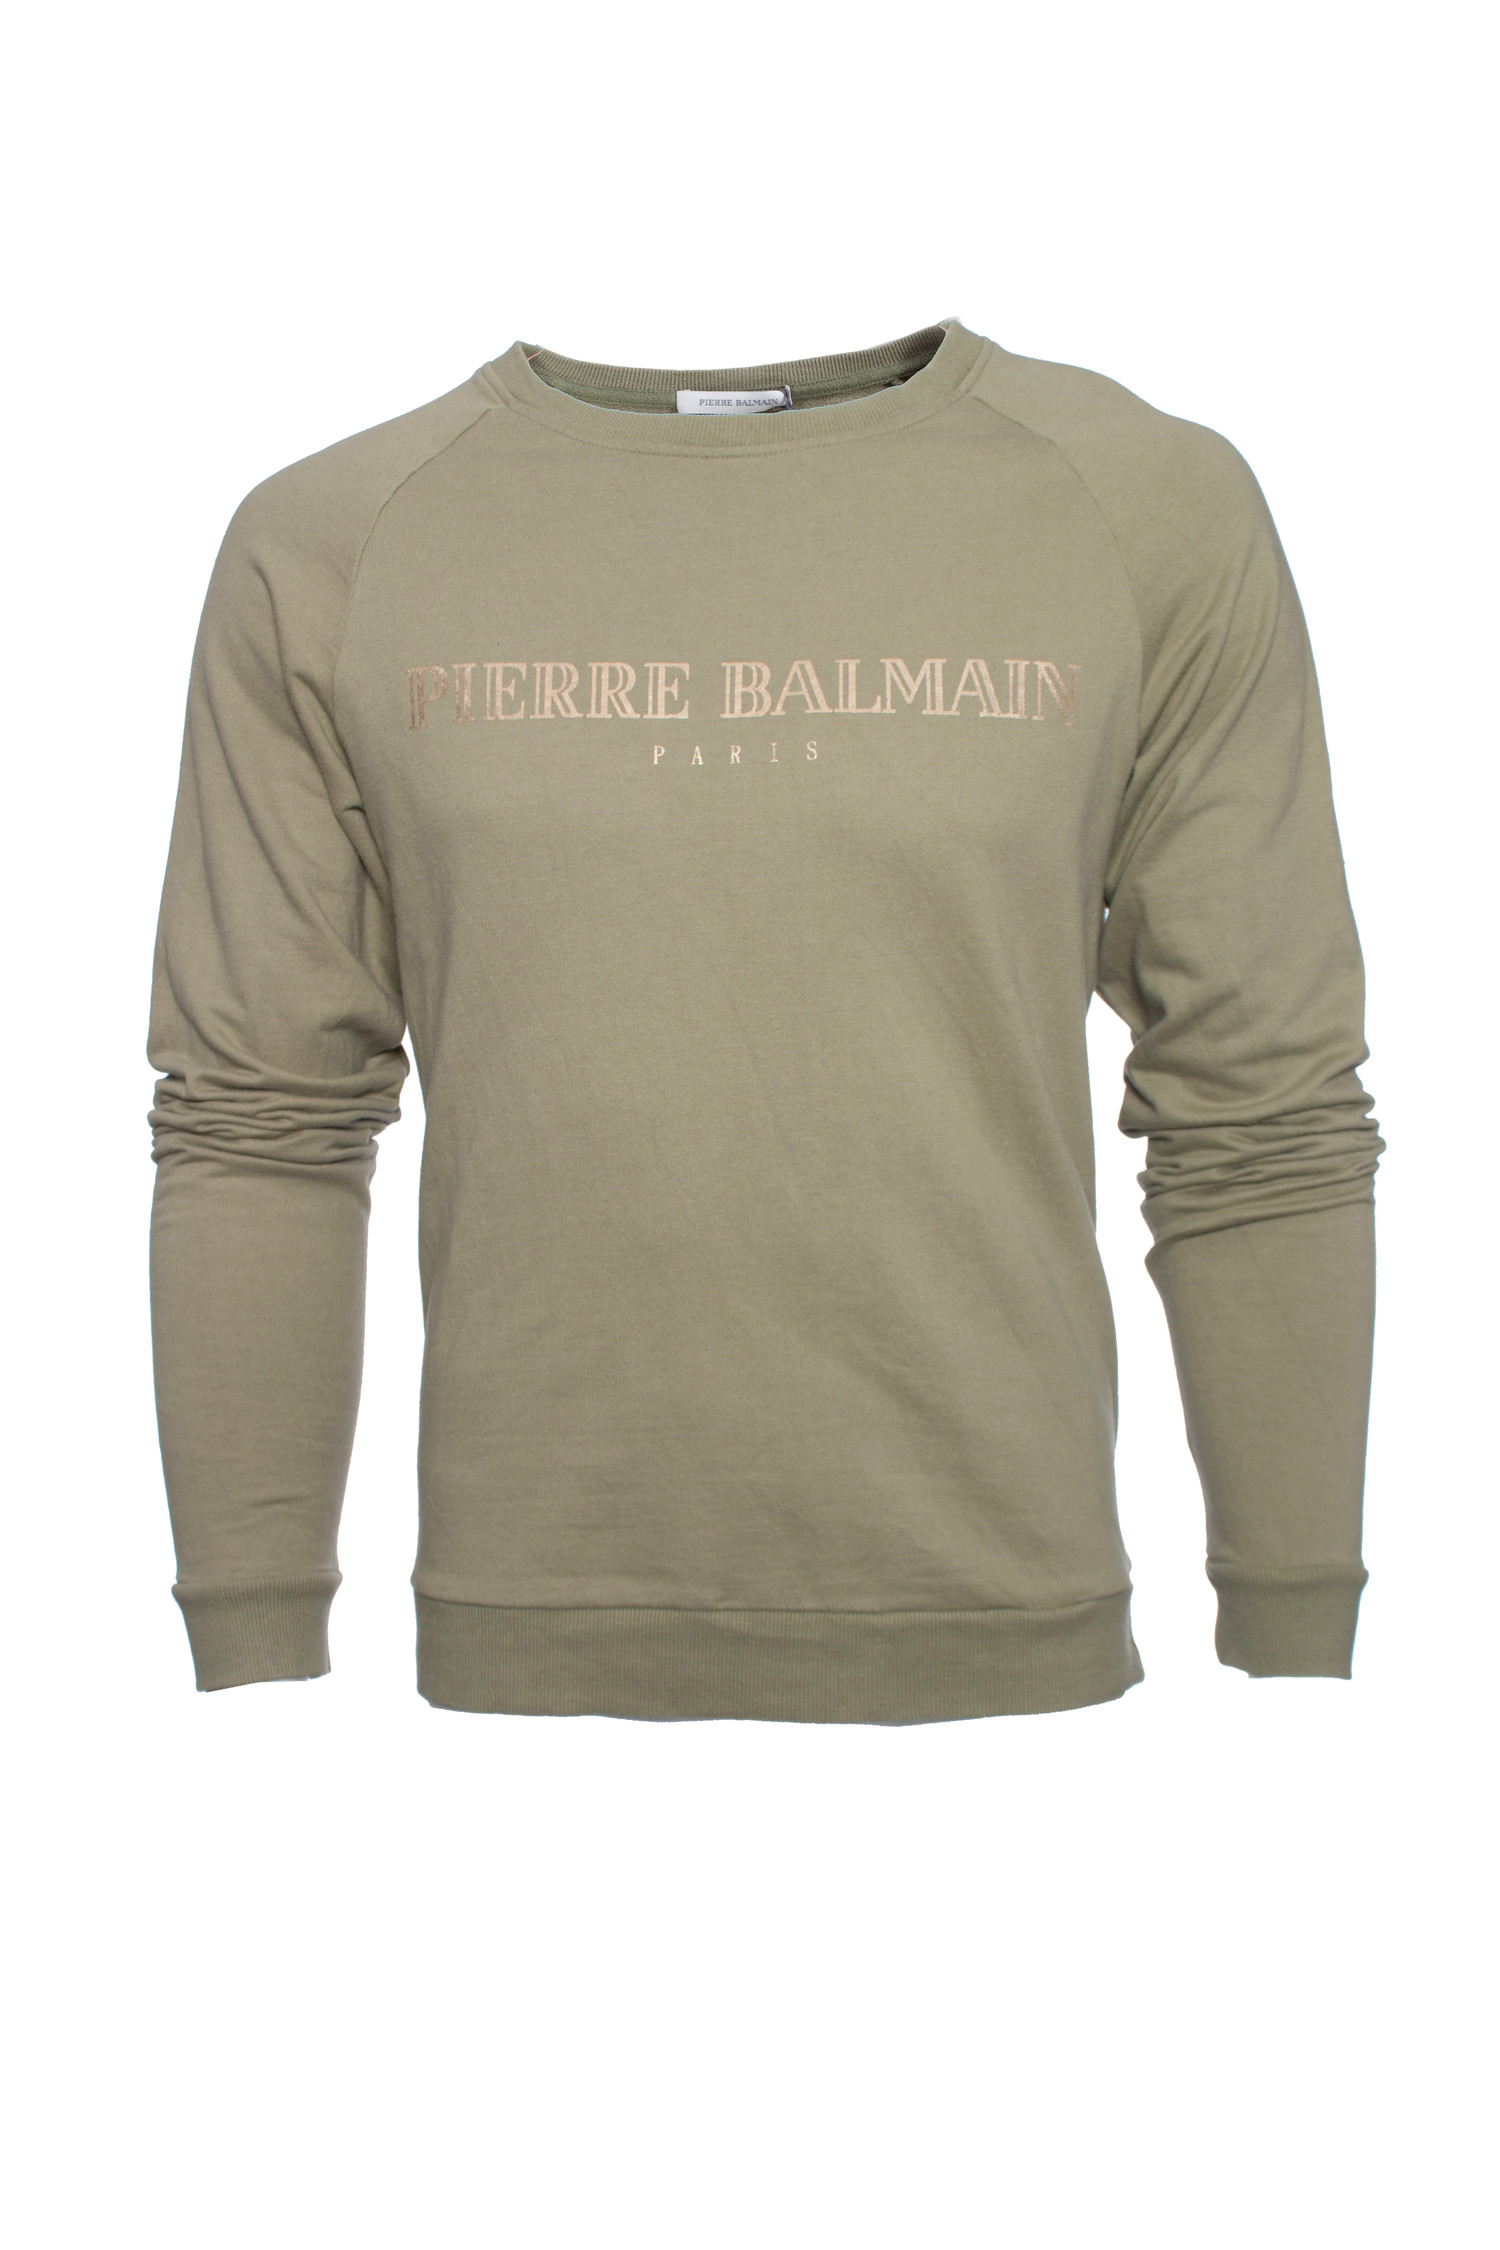 Pierre Balmain, Green Sweatshirt. - Unique Pieces